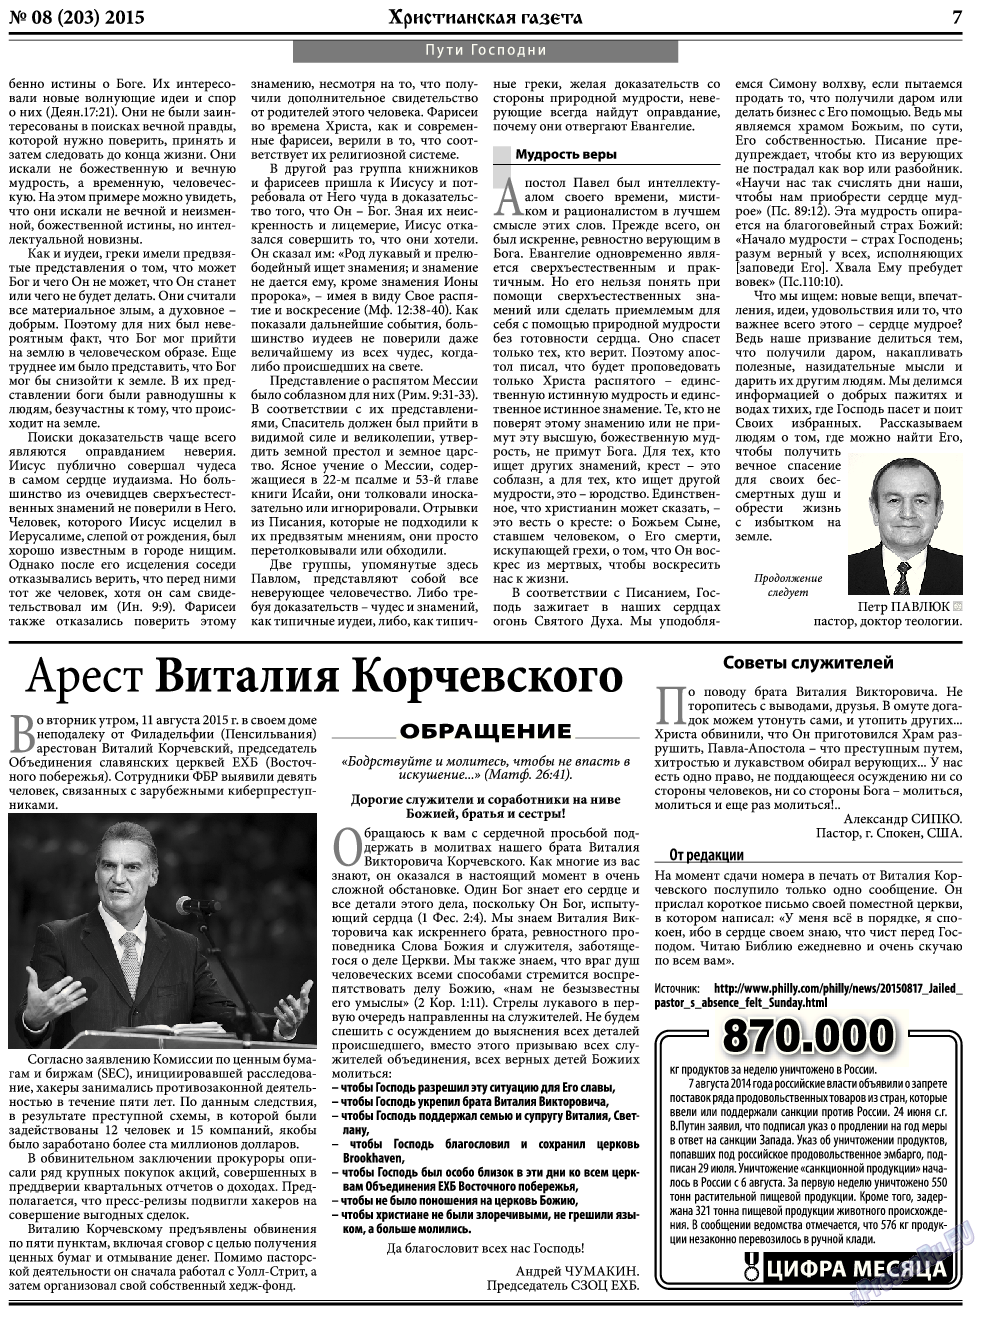 Христианская газета, газета. 2015 №8 стр.7